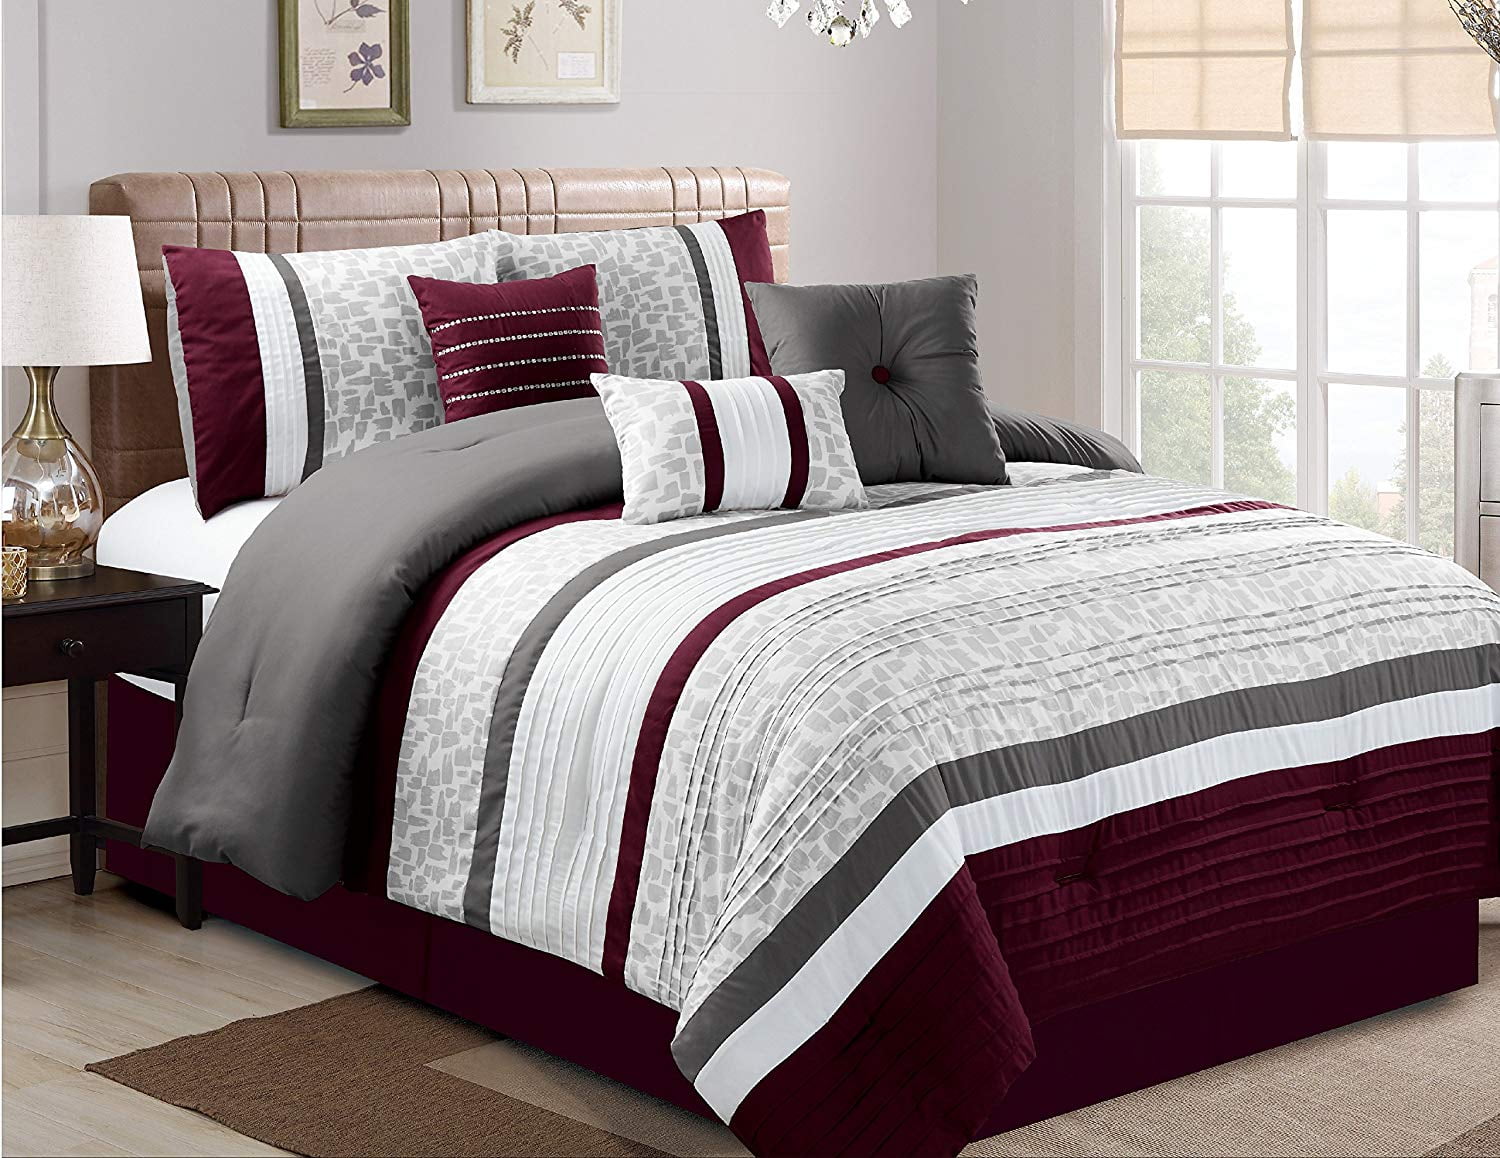 Hgmart Bedding Comforter Set 7 Piece, Oversized Sheets King Bed